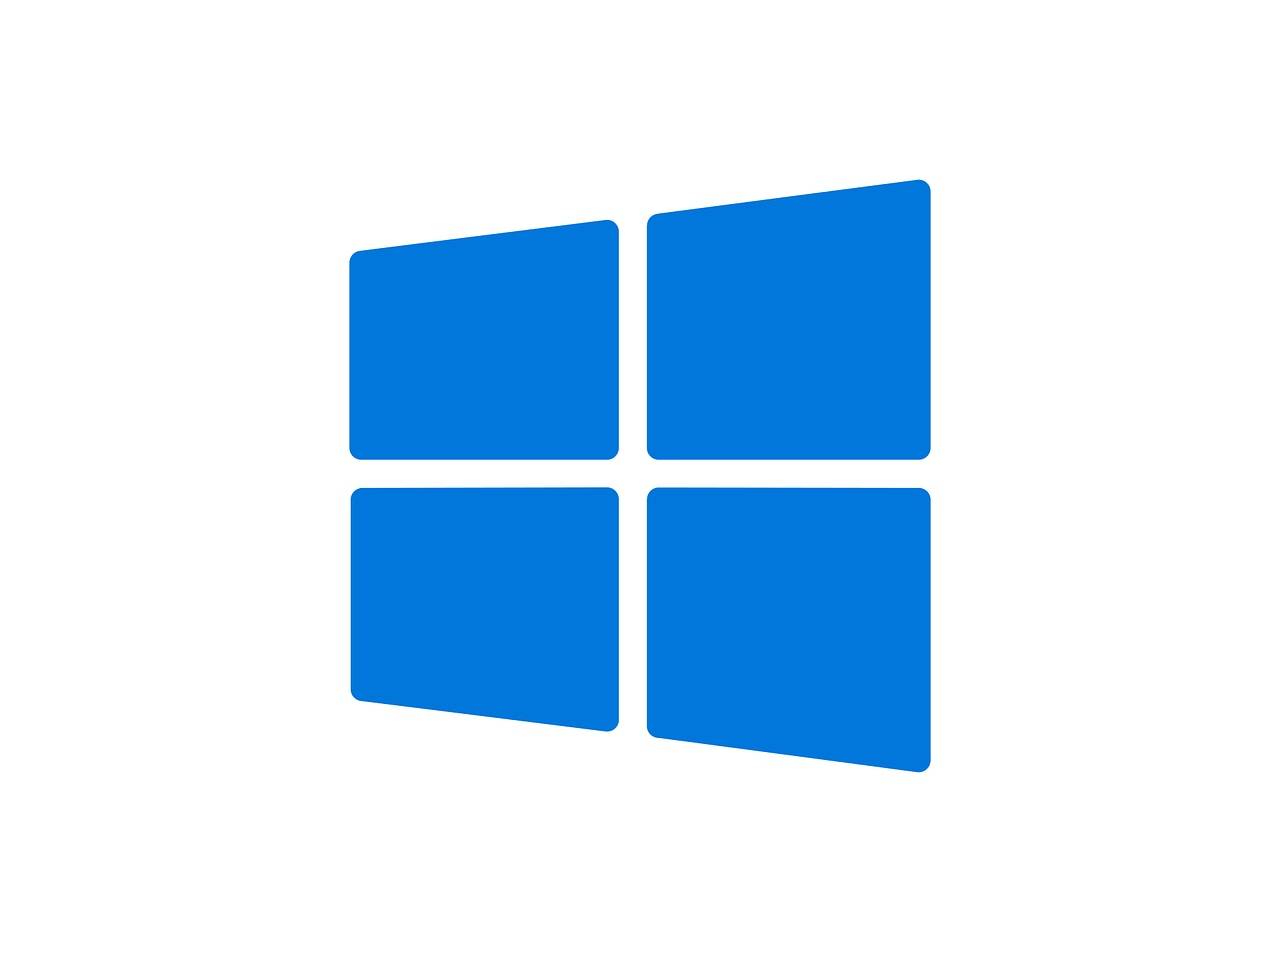 Windows 2020: ecco la lista dei programmi obsoleti nel nuovo anno